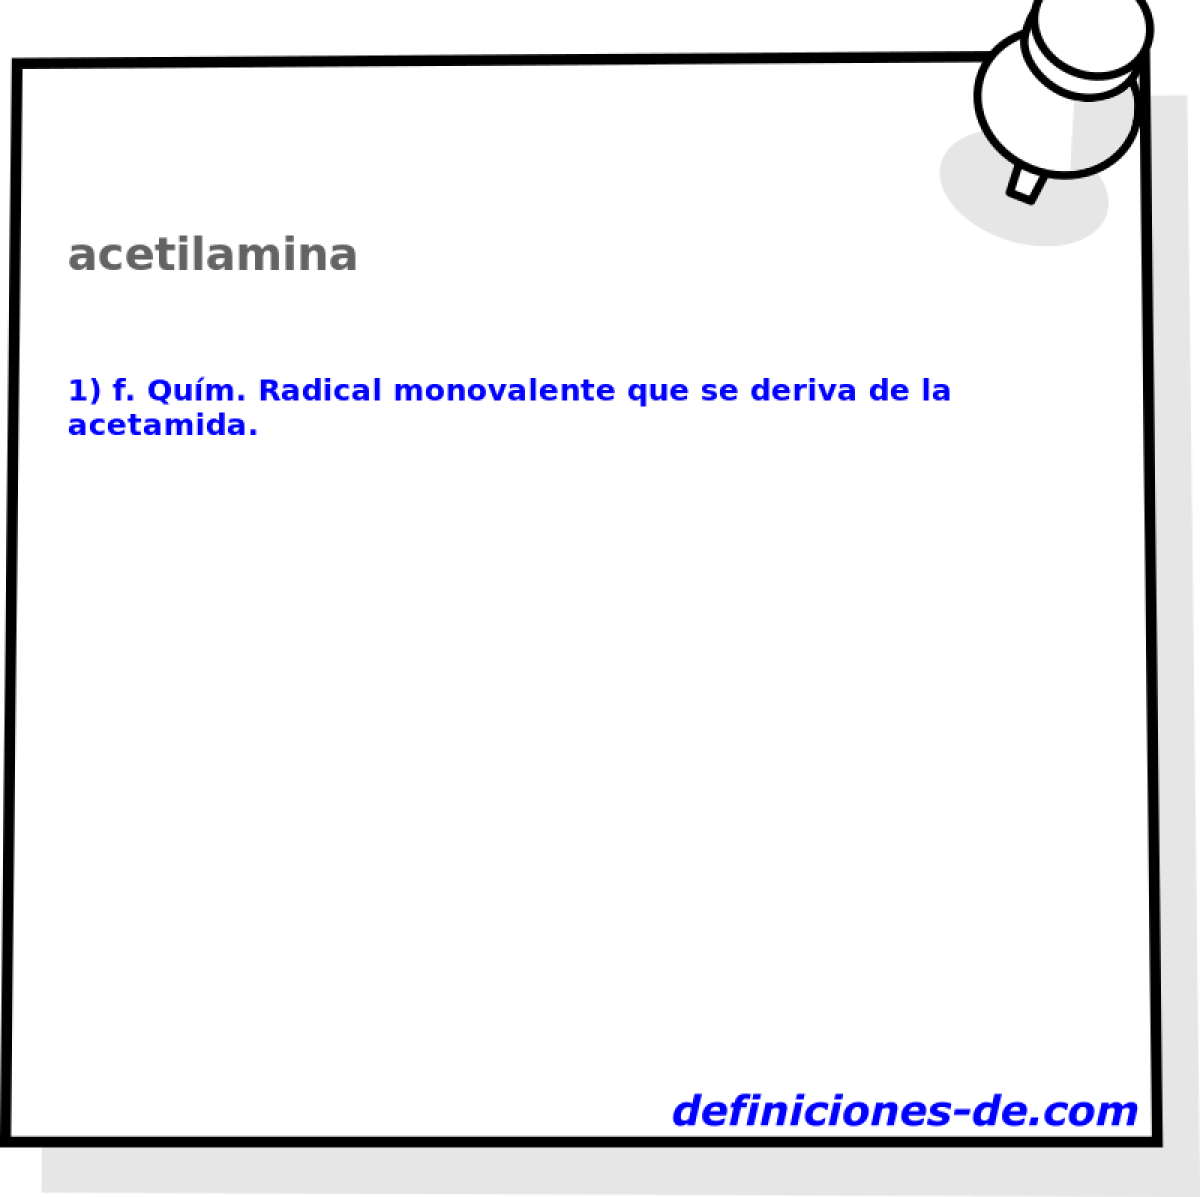 acetilamina 